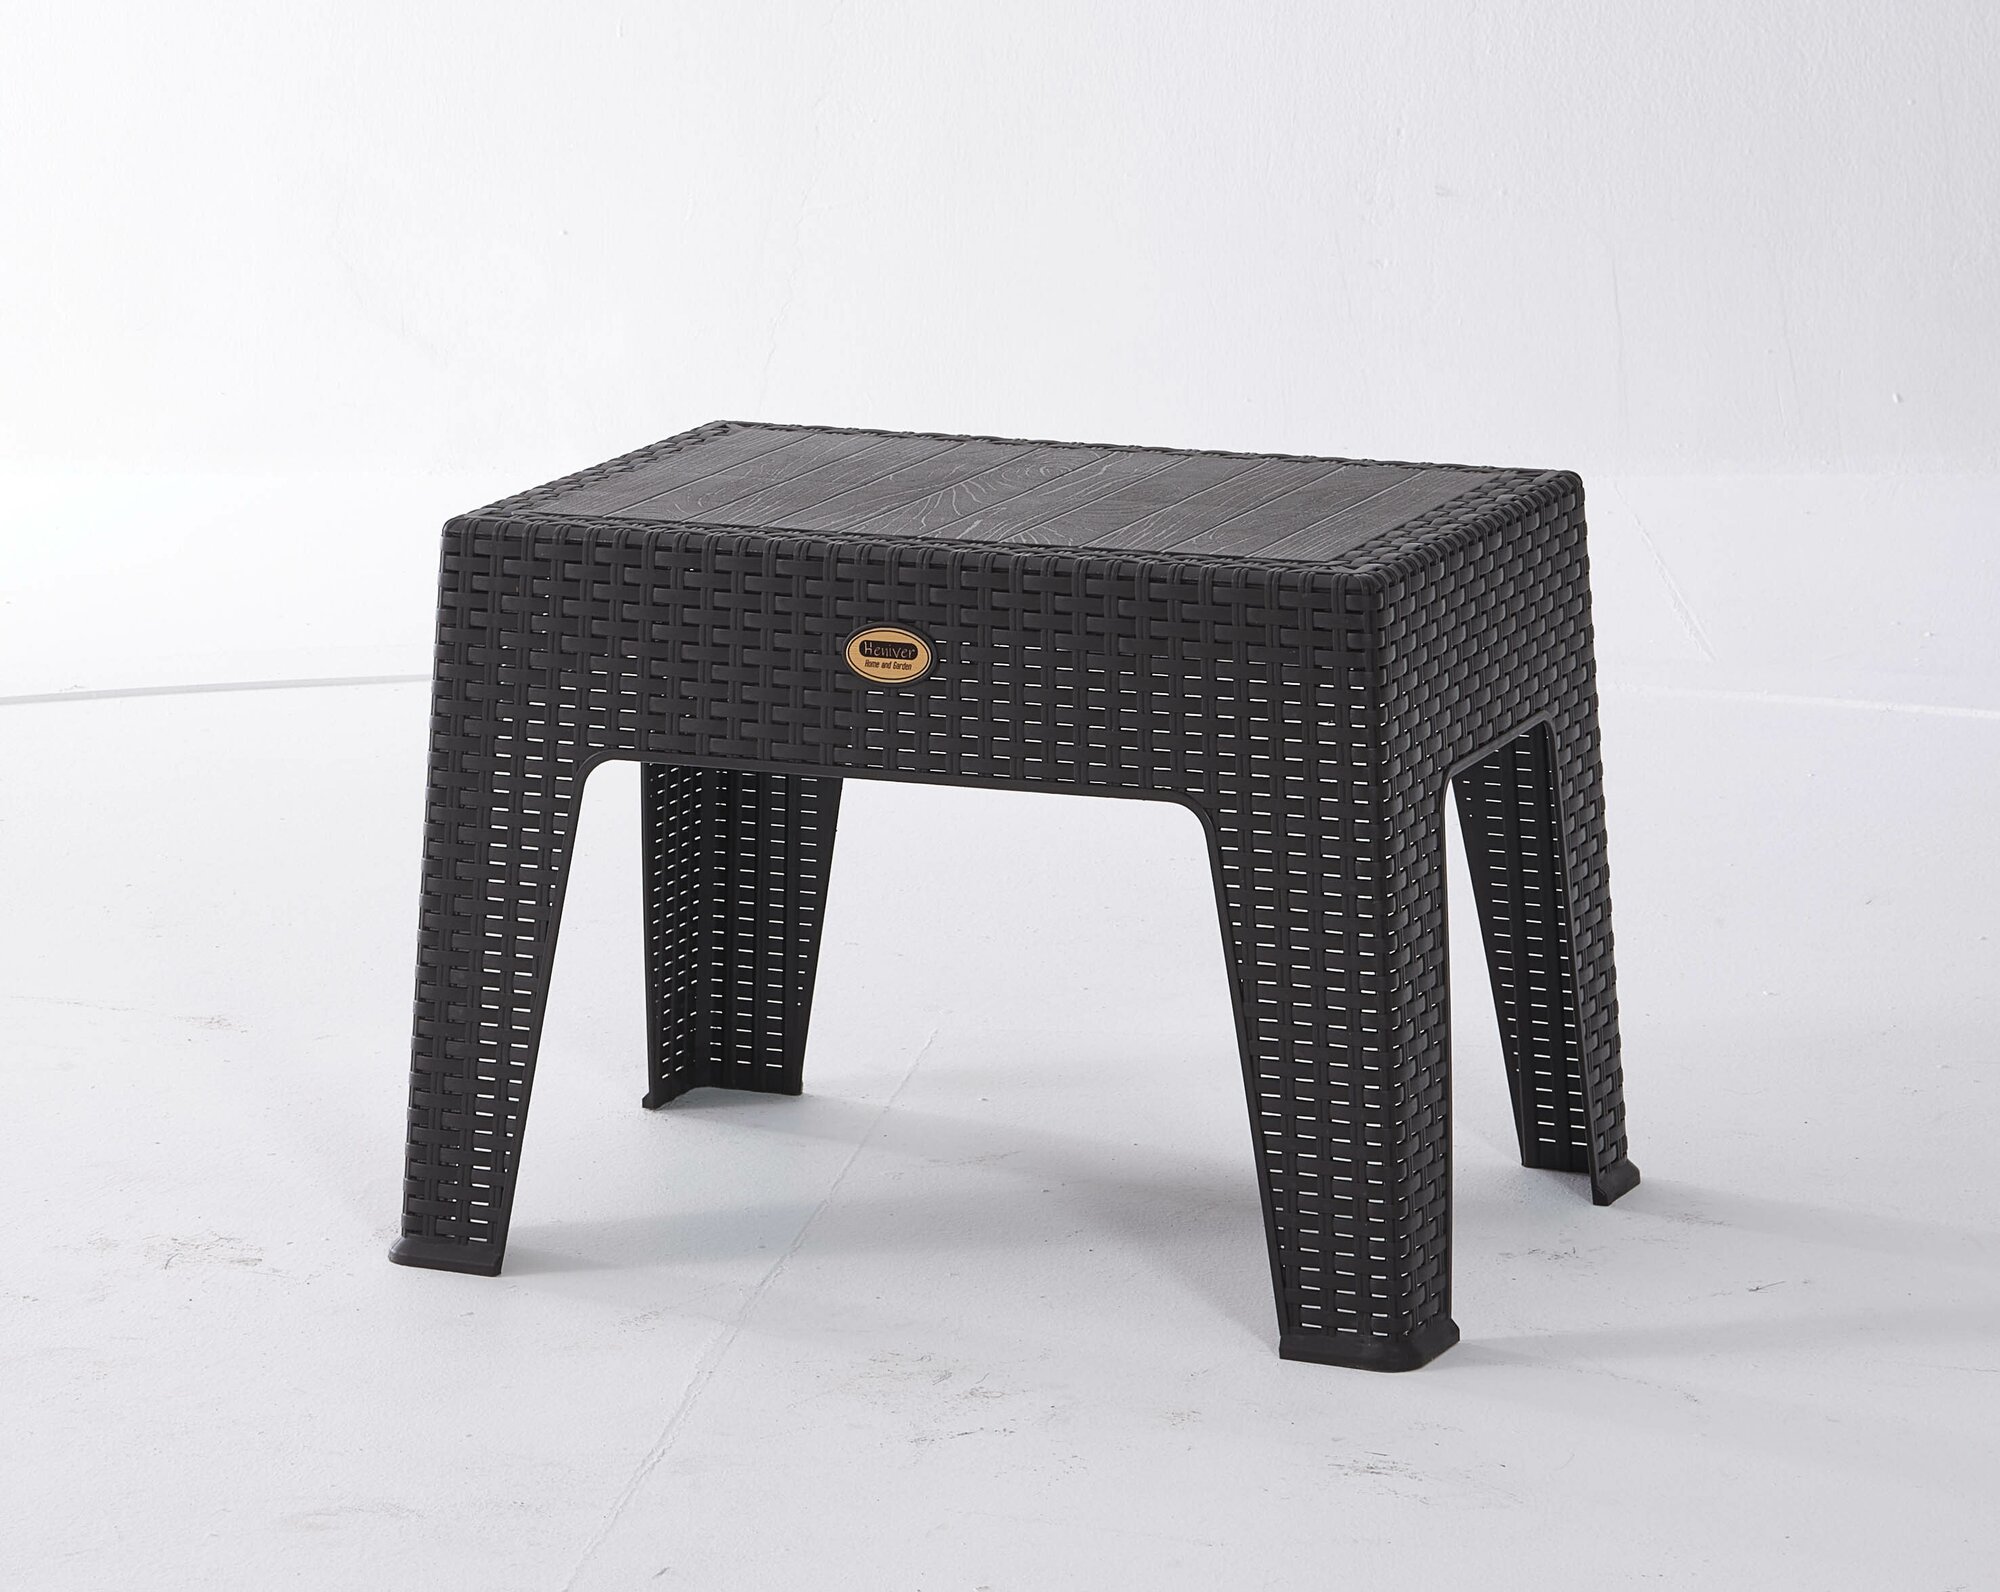 Стол кофейный 40*43,5 см, BABEL, арт. SPE-R002